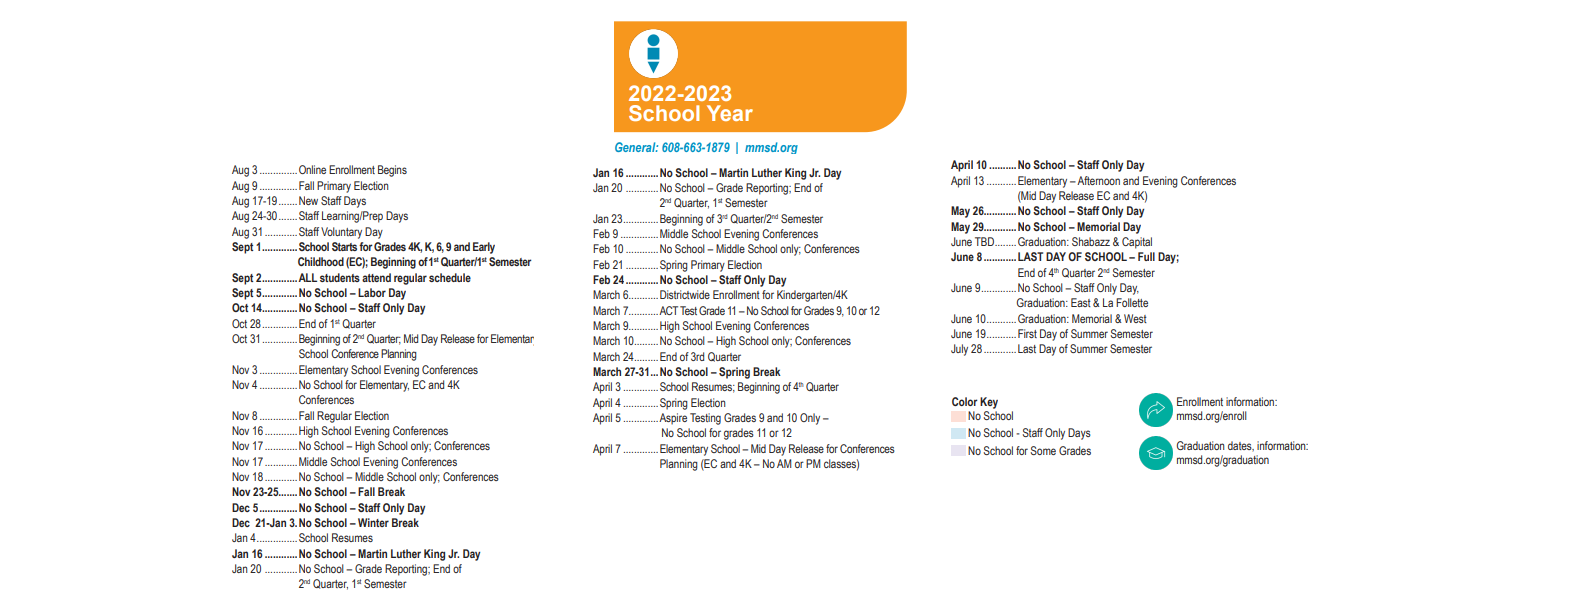 District School Academic Calendar Key for Nuestro Mundo